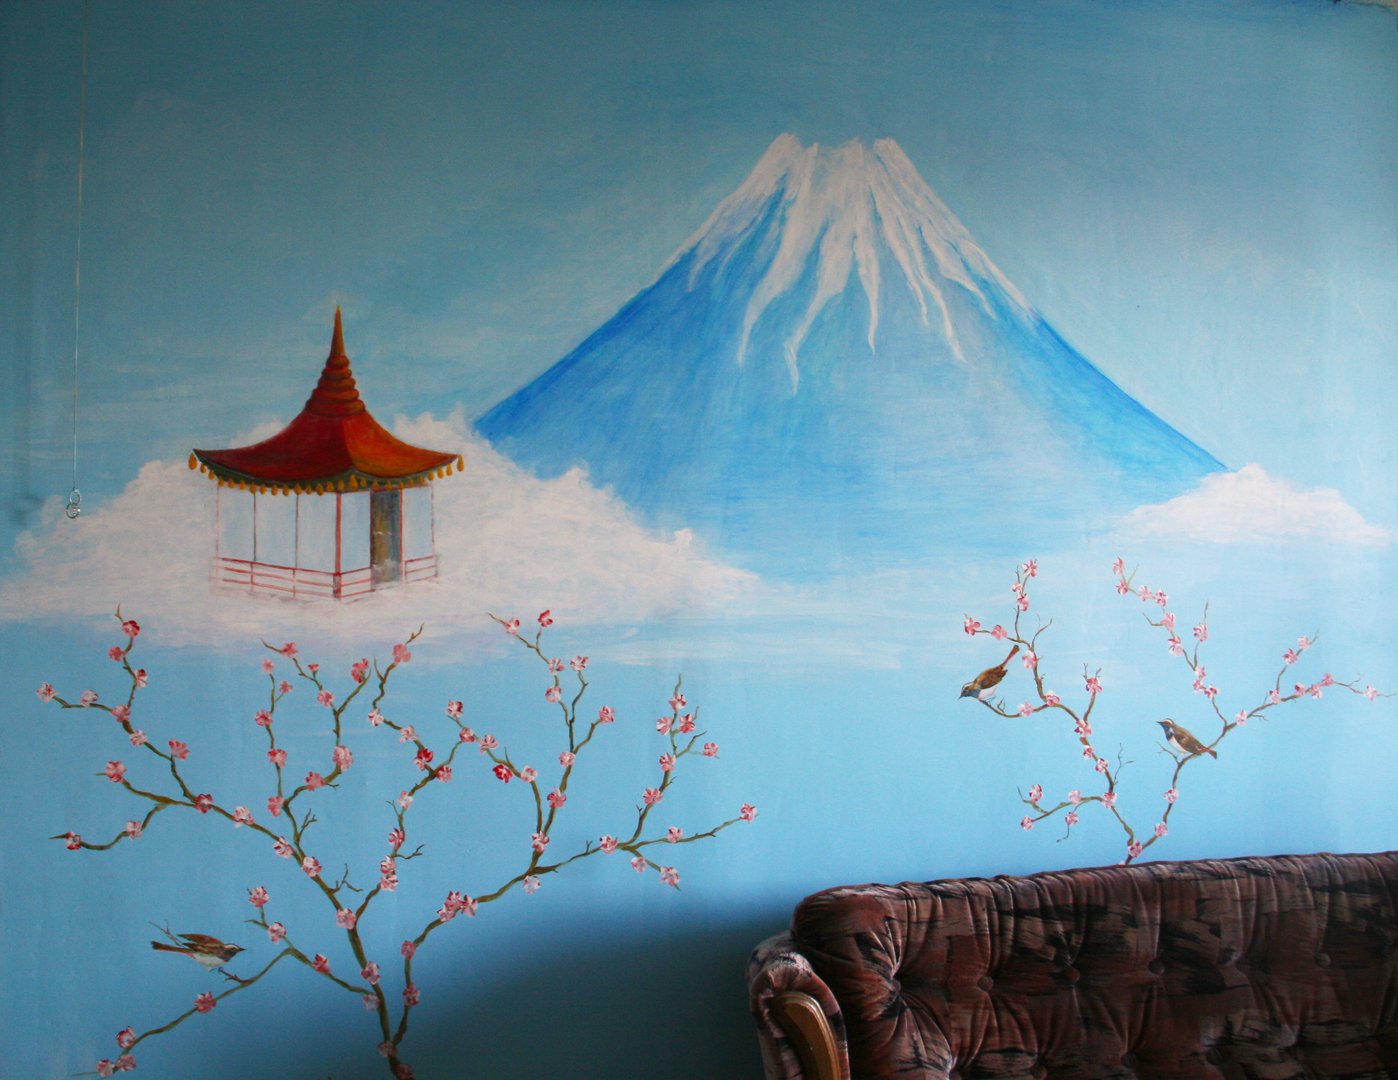 Роспись стен в японском стиле